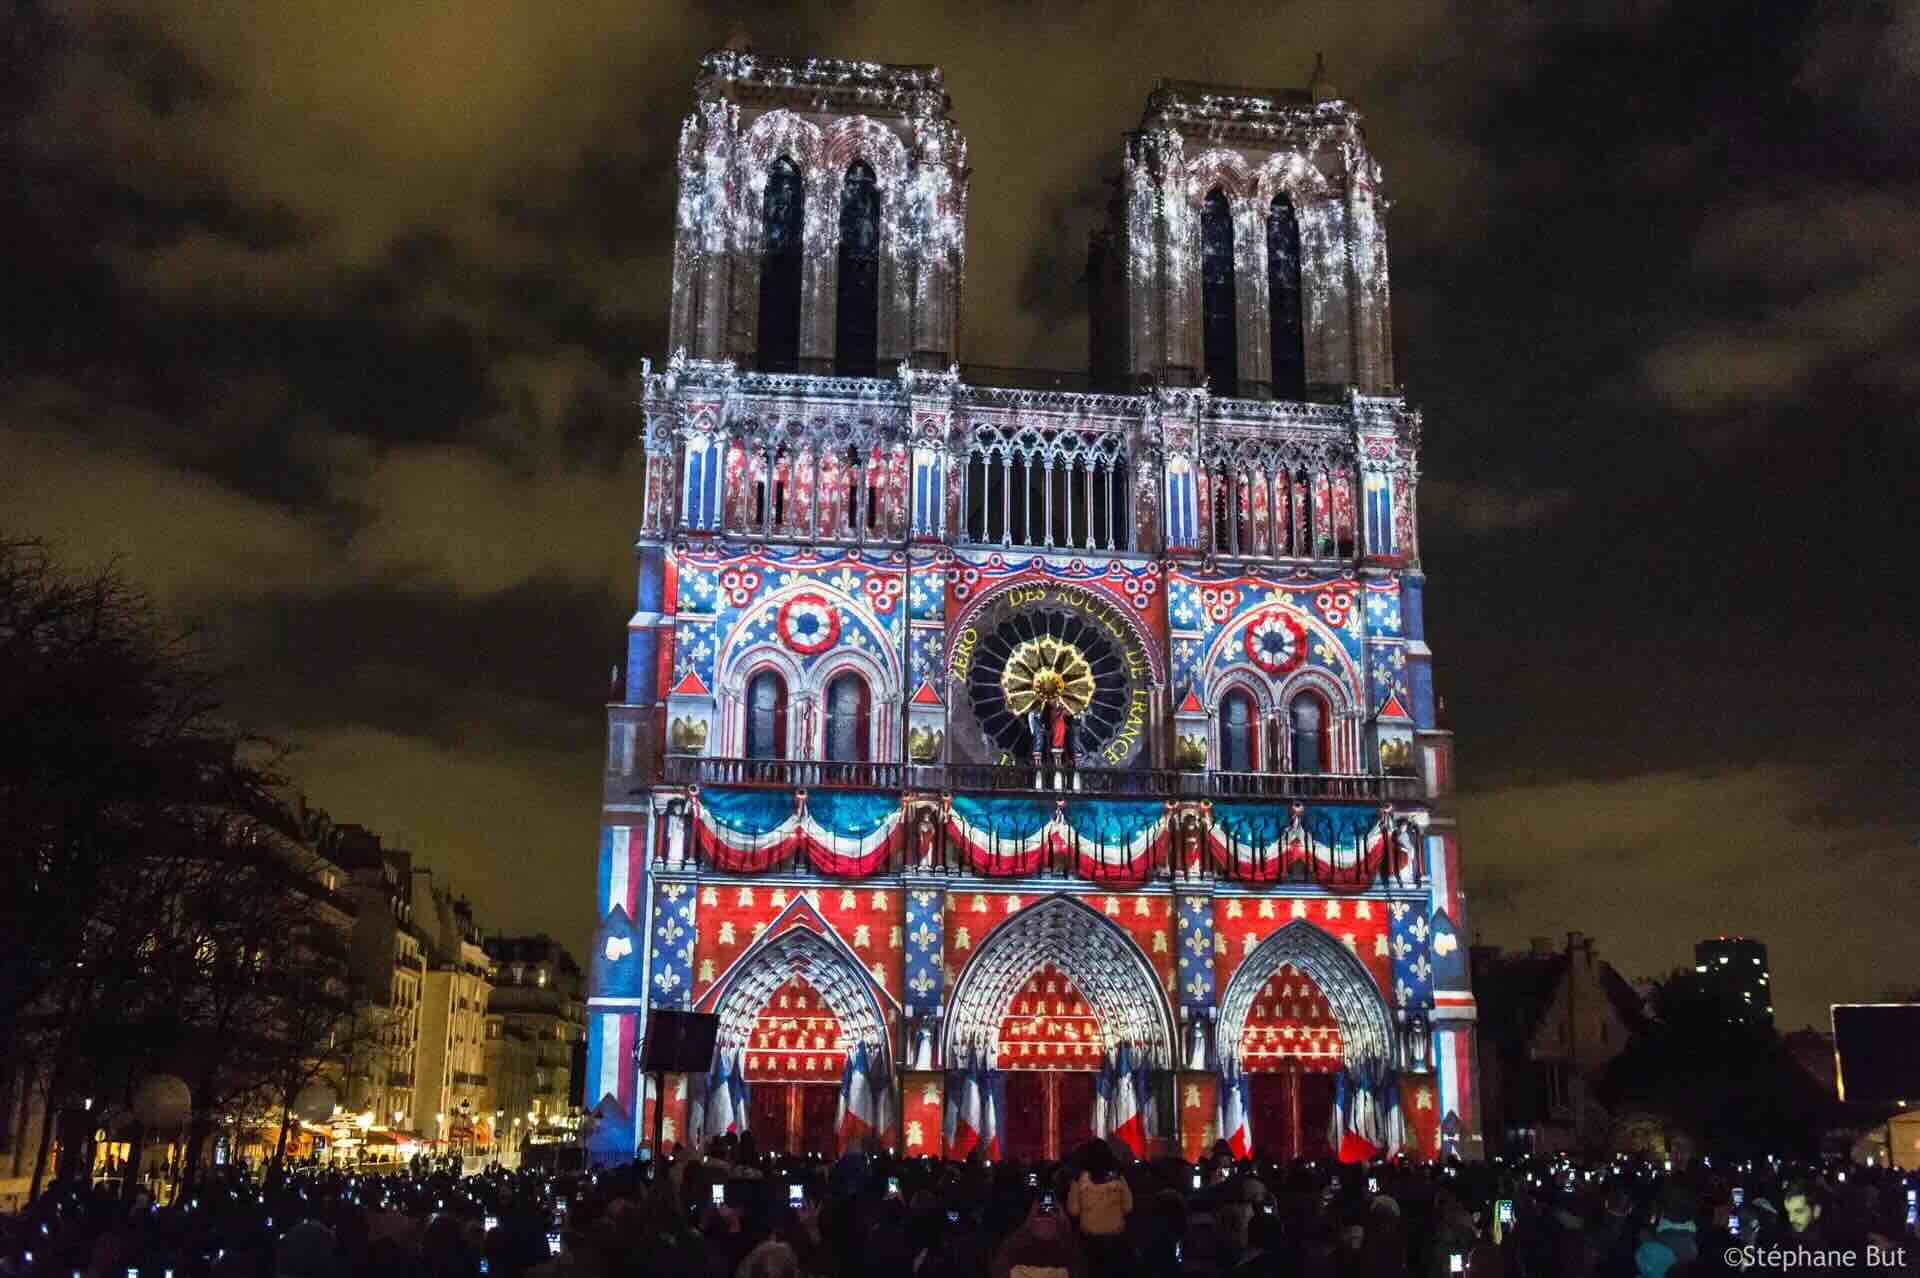 Barco Projektionsmapping mit 3D-Effekt, hier am Beispiel von Notre Dame